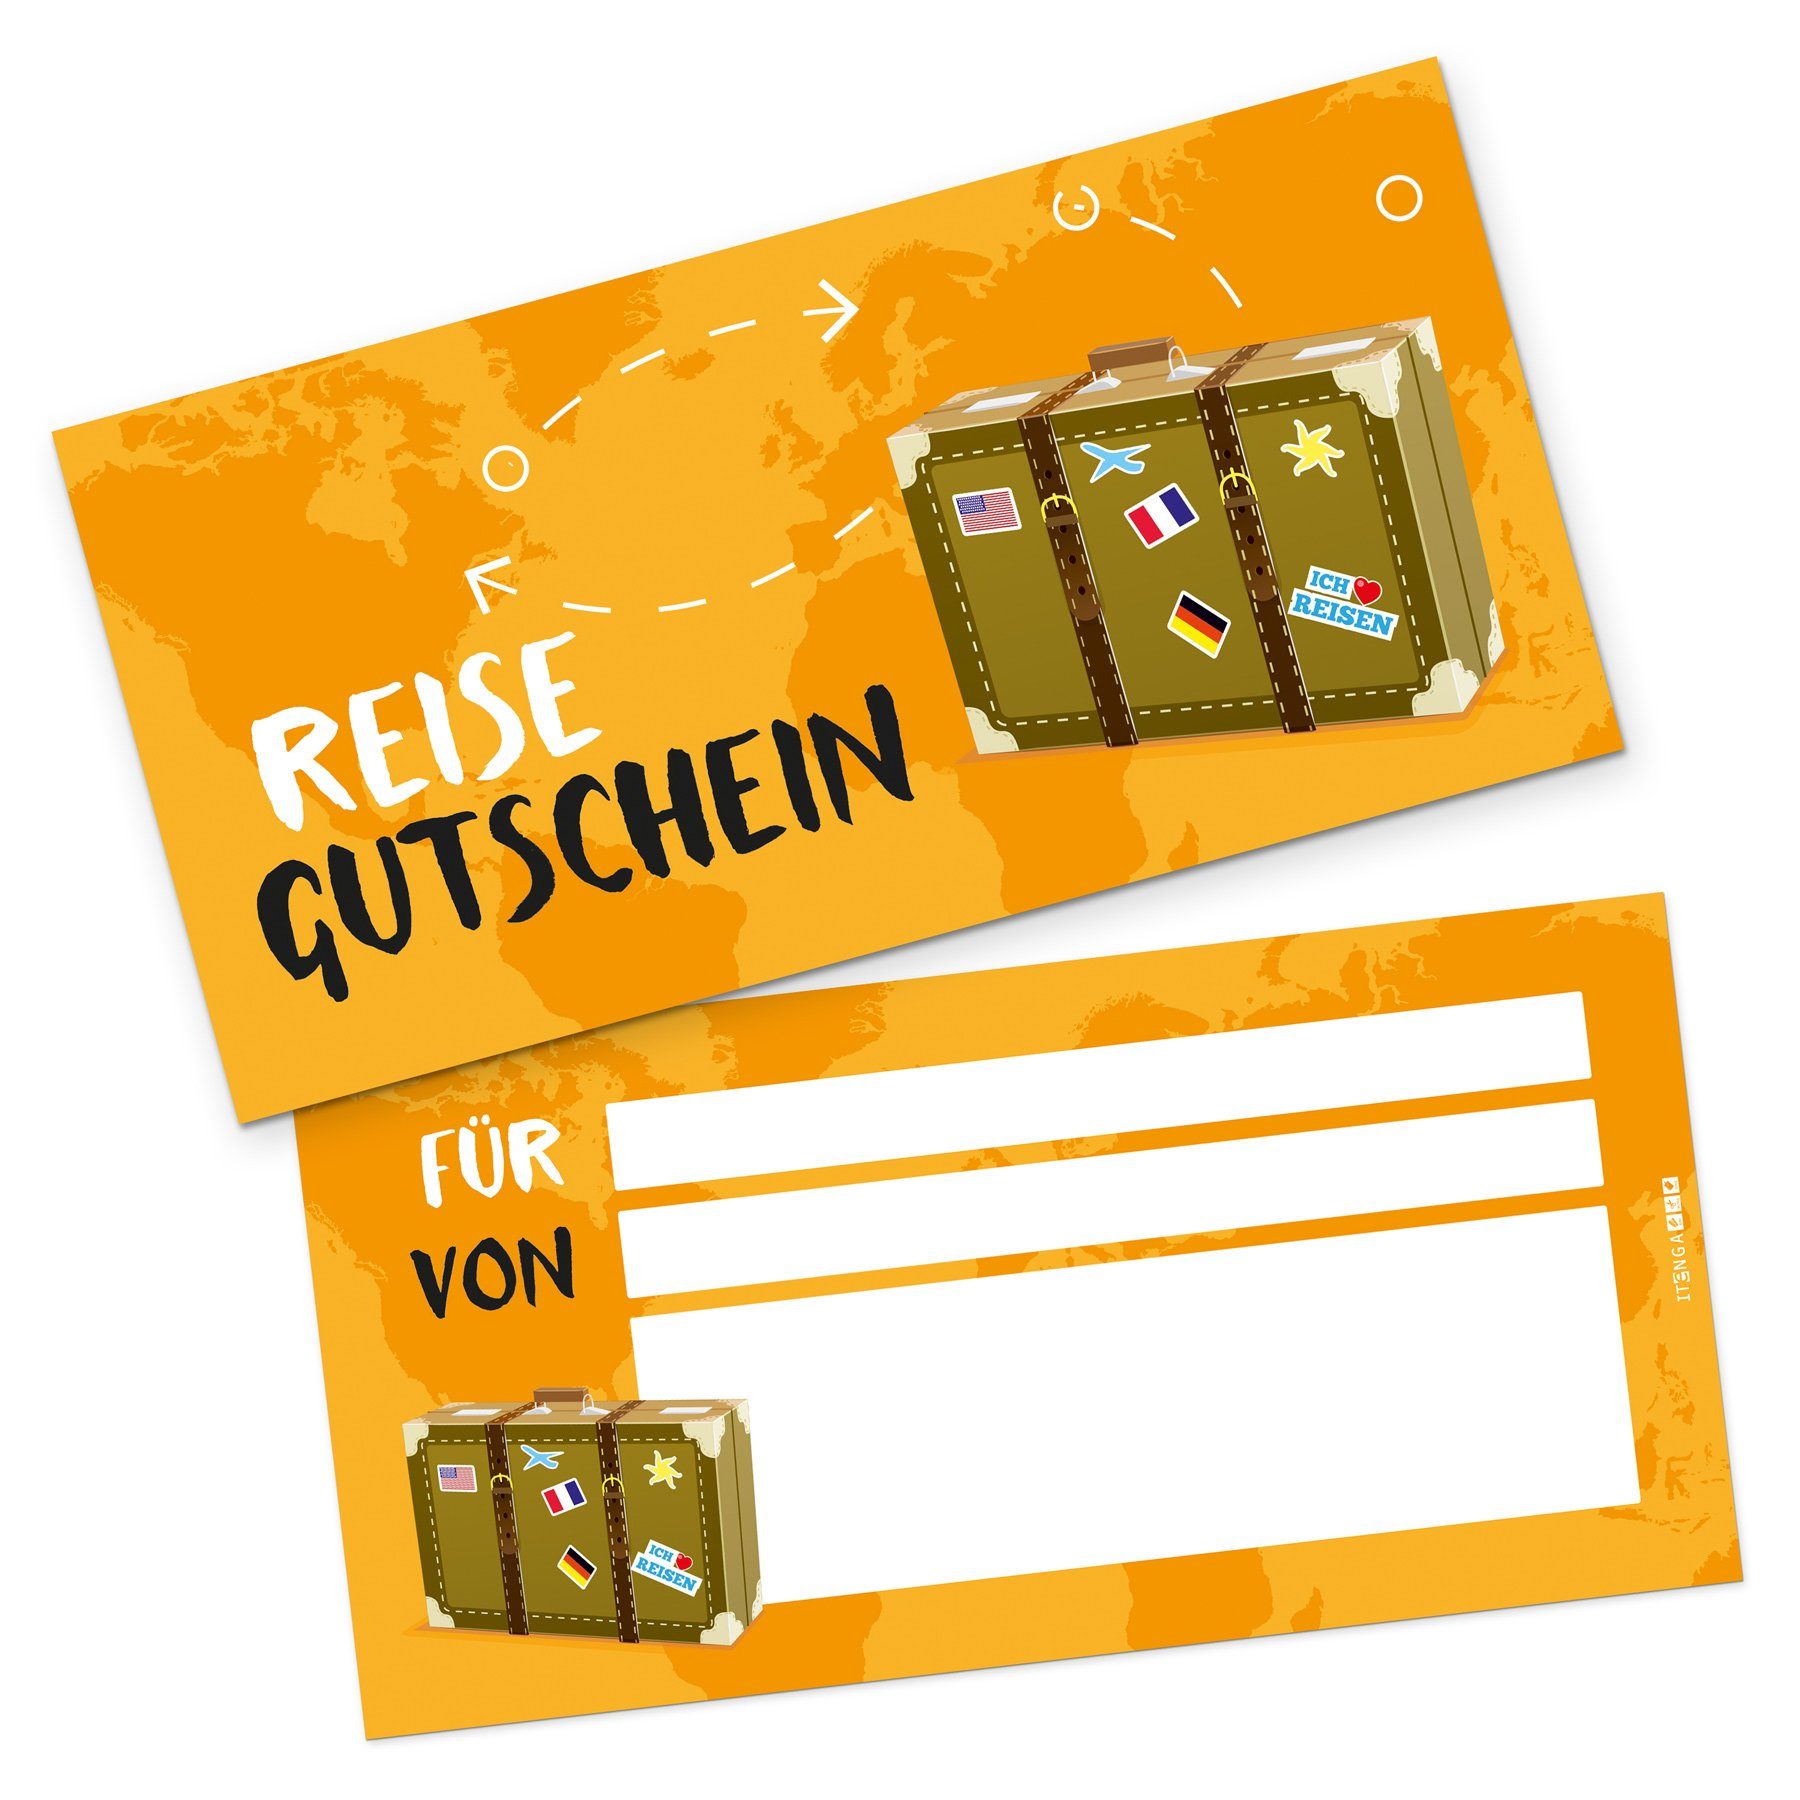 itenga Grußkarten itenga Geschenkgutschein Reise Reisekoffer - Gutschein zum Ausfüllen K